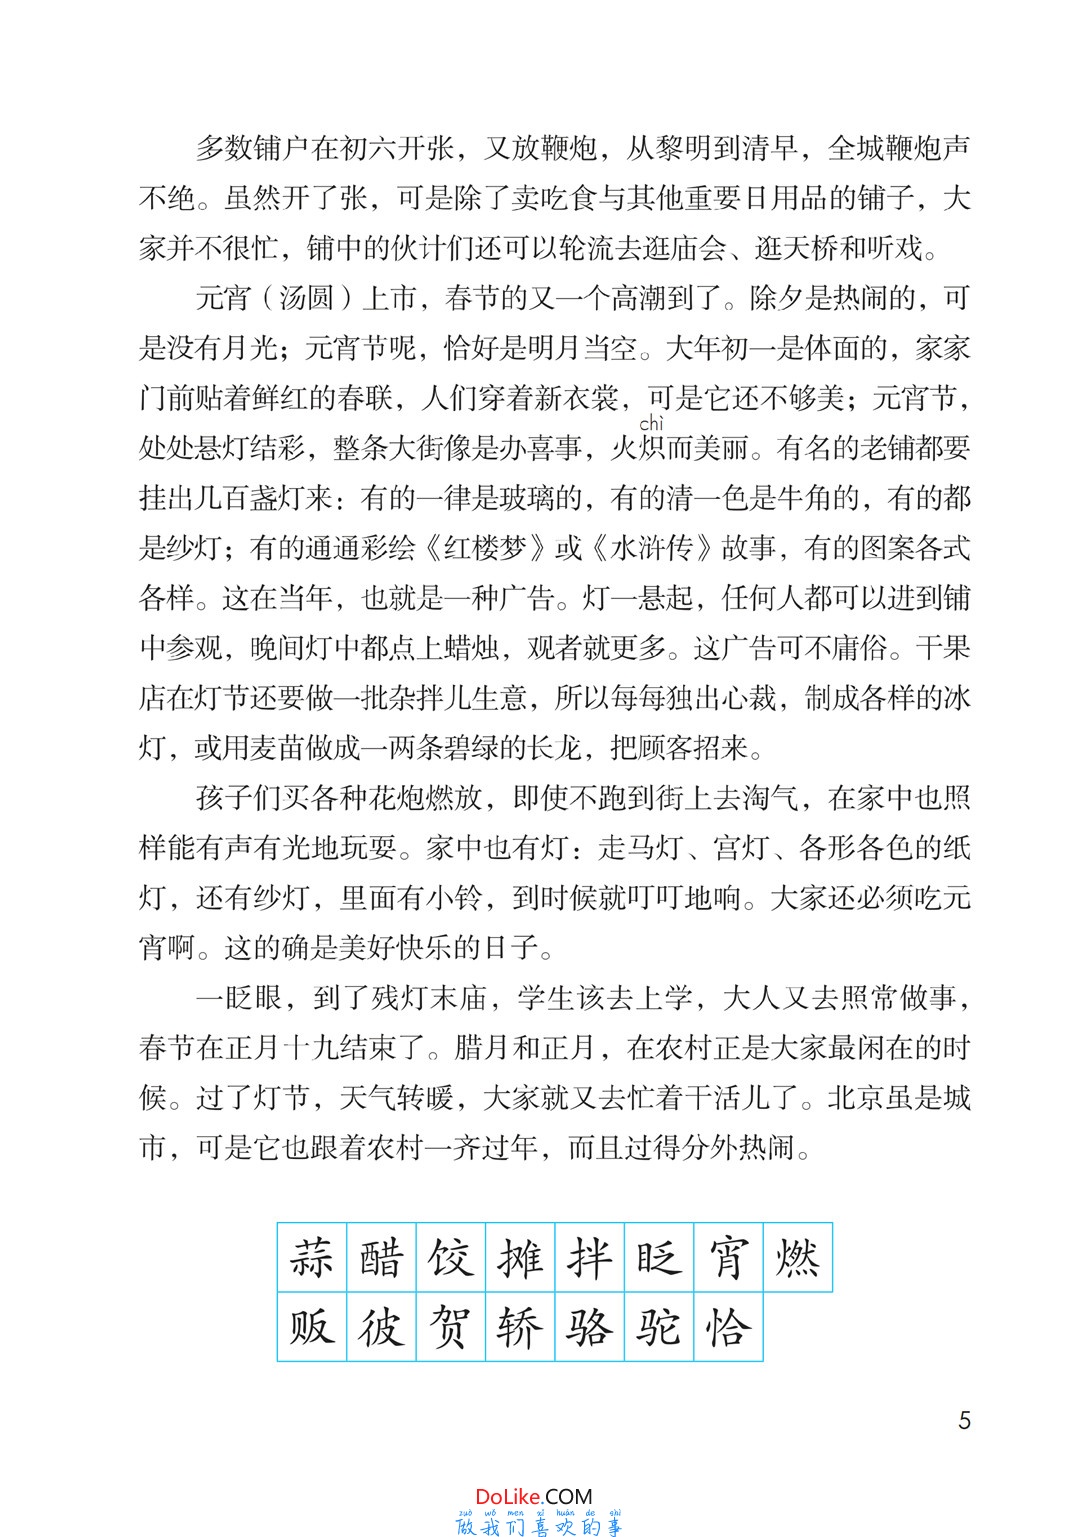 六年级语文下册-课文1 北京的春节 (P2-P6)